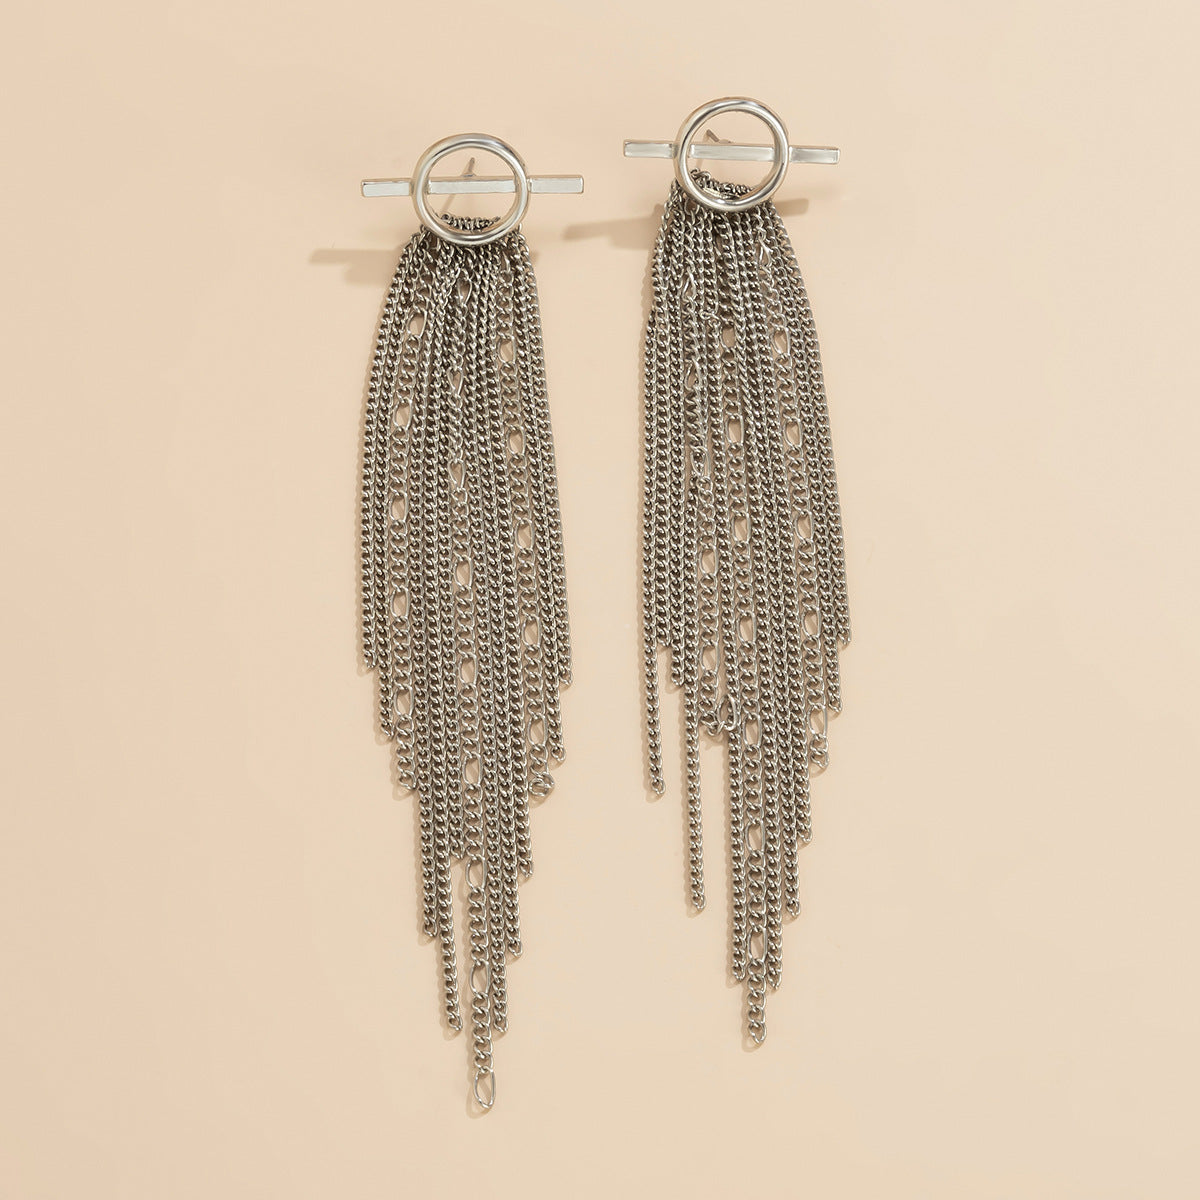 Vintage Tassels Design Metal Drop Earrings